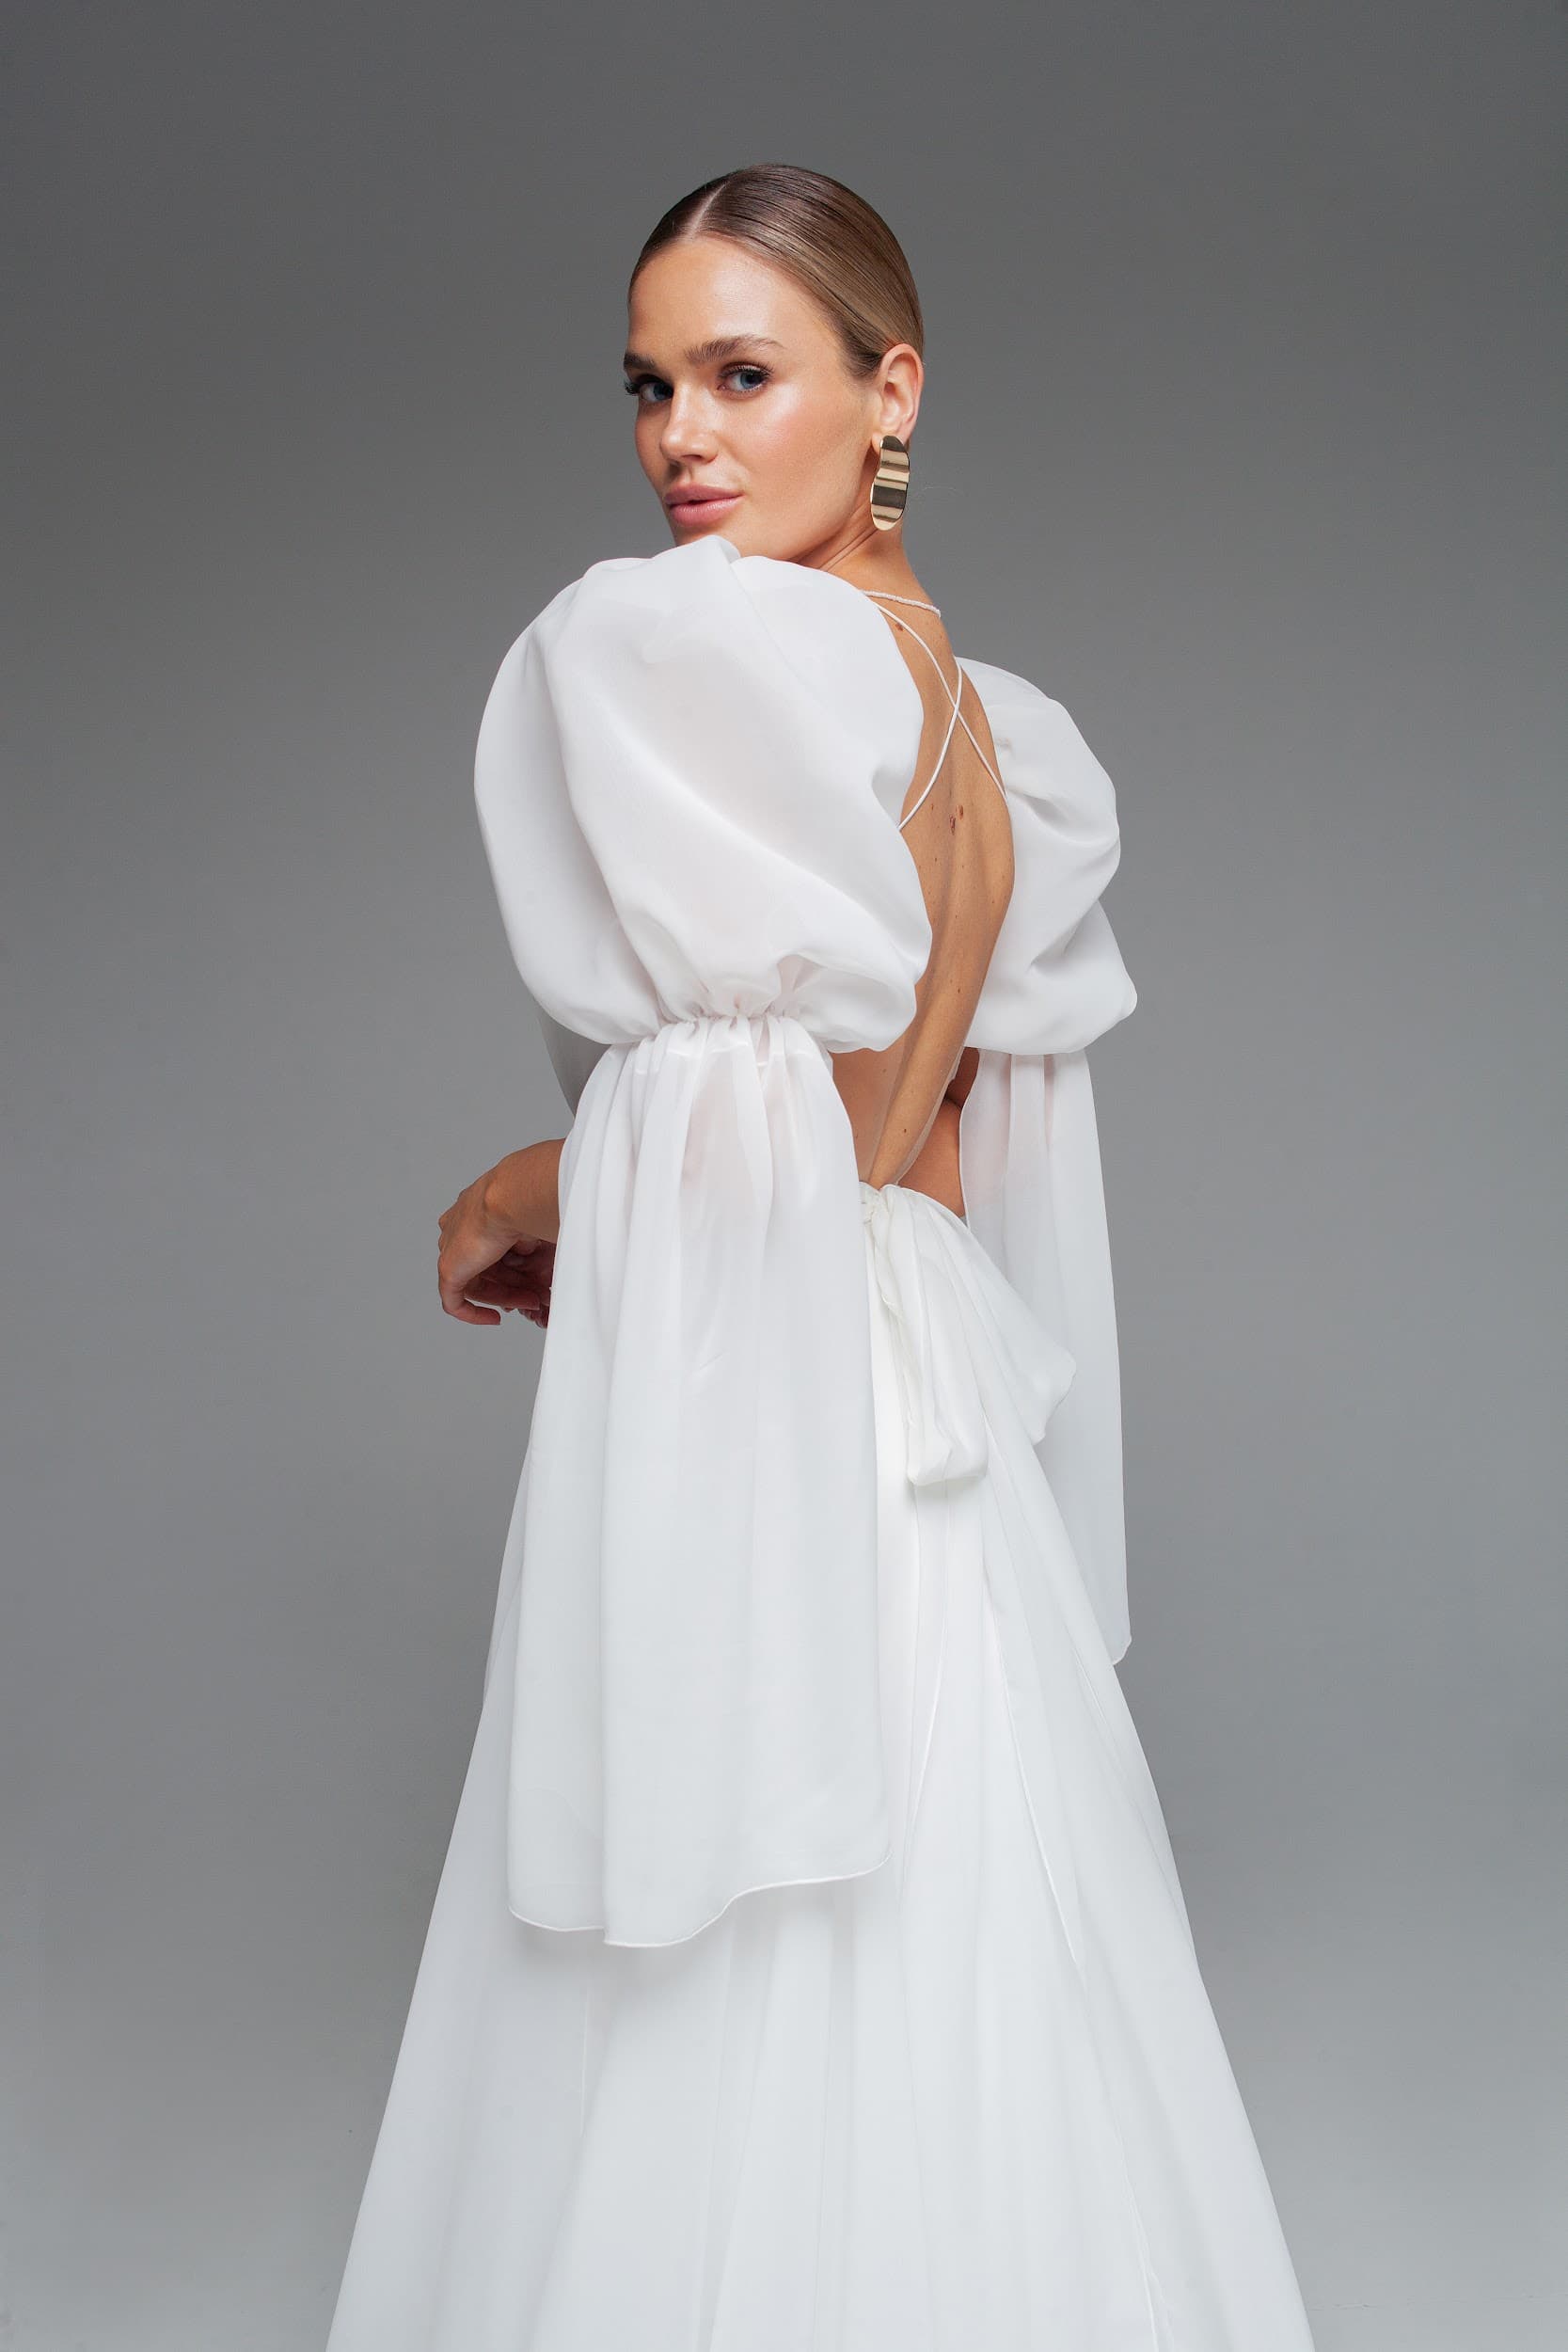 Rara Avis silk open back wedding dress Venta at Dell'Amore Bridal, NZ 5